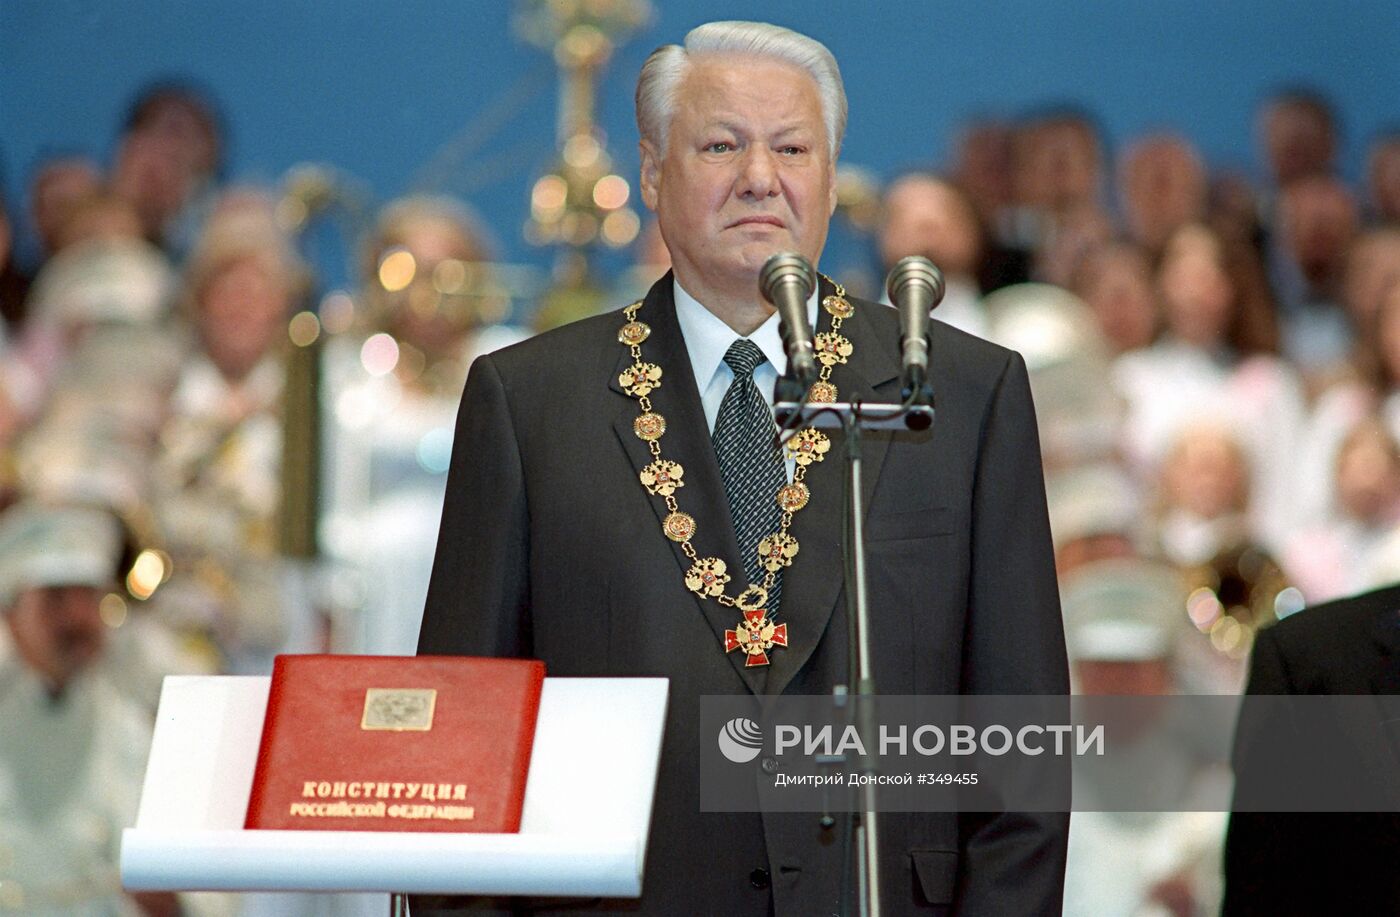 Инаугурация Президента РФ Бориса Ельцина